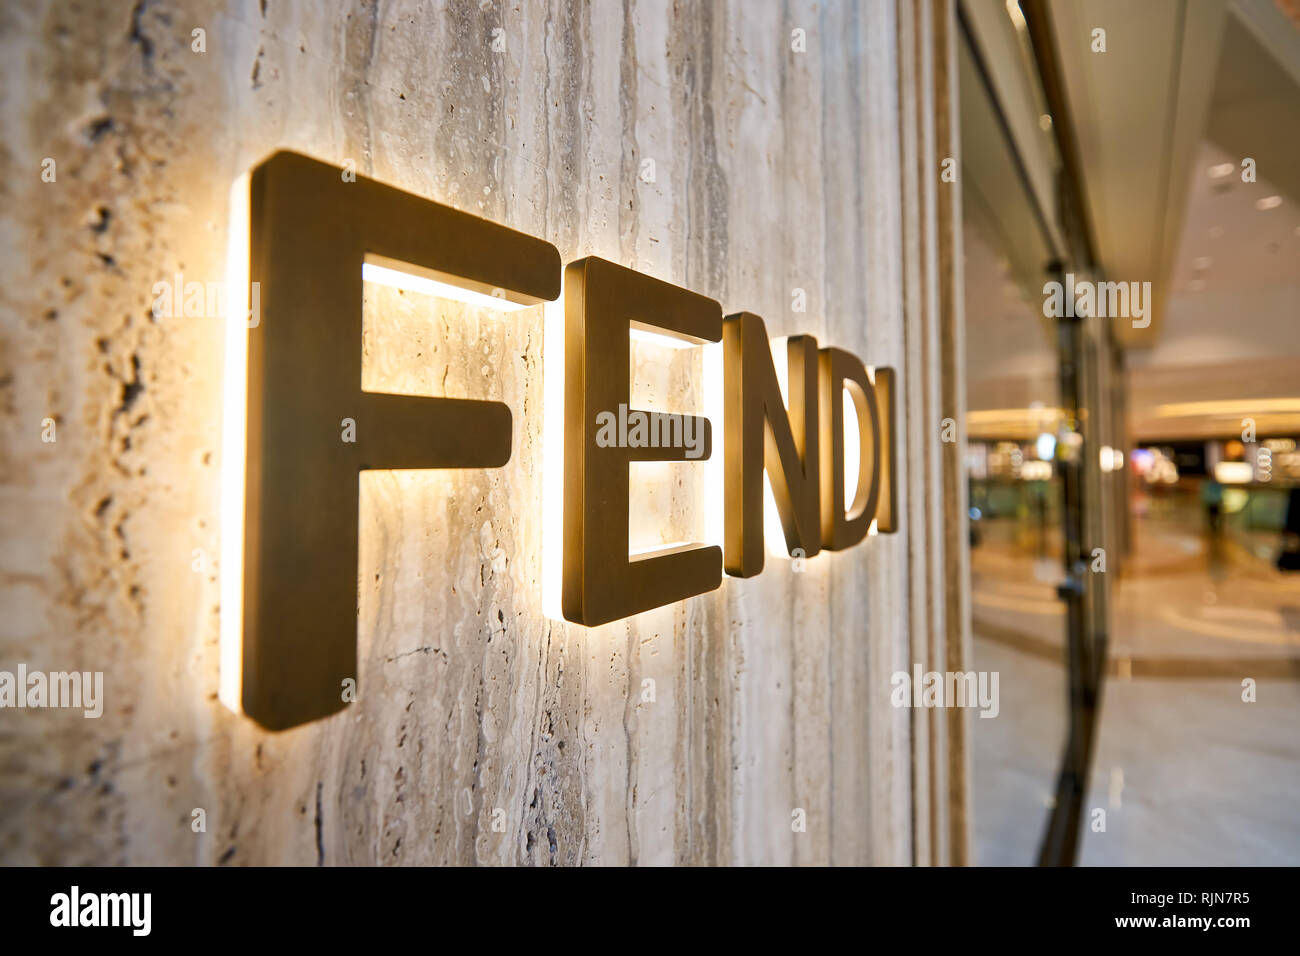 HONG KONG - JANUARY 26, 2016: Fendi logo on the wall at Elements ...